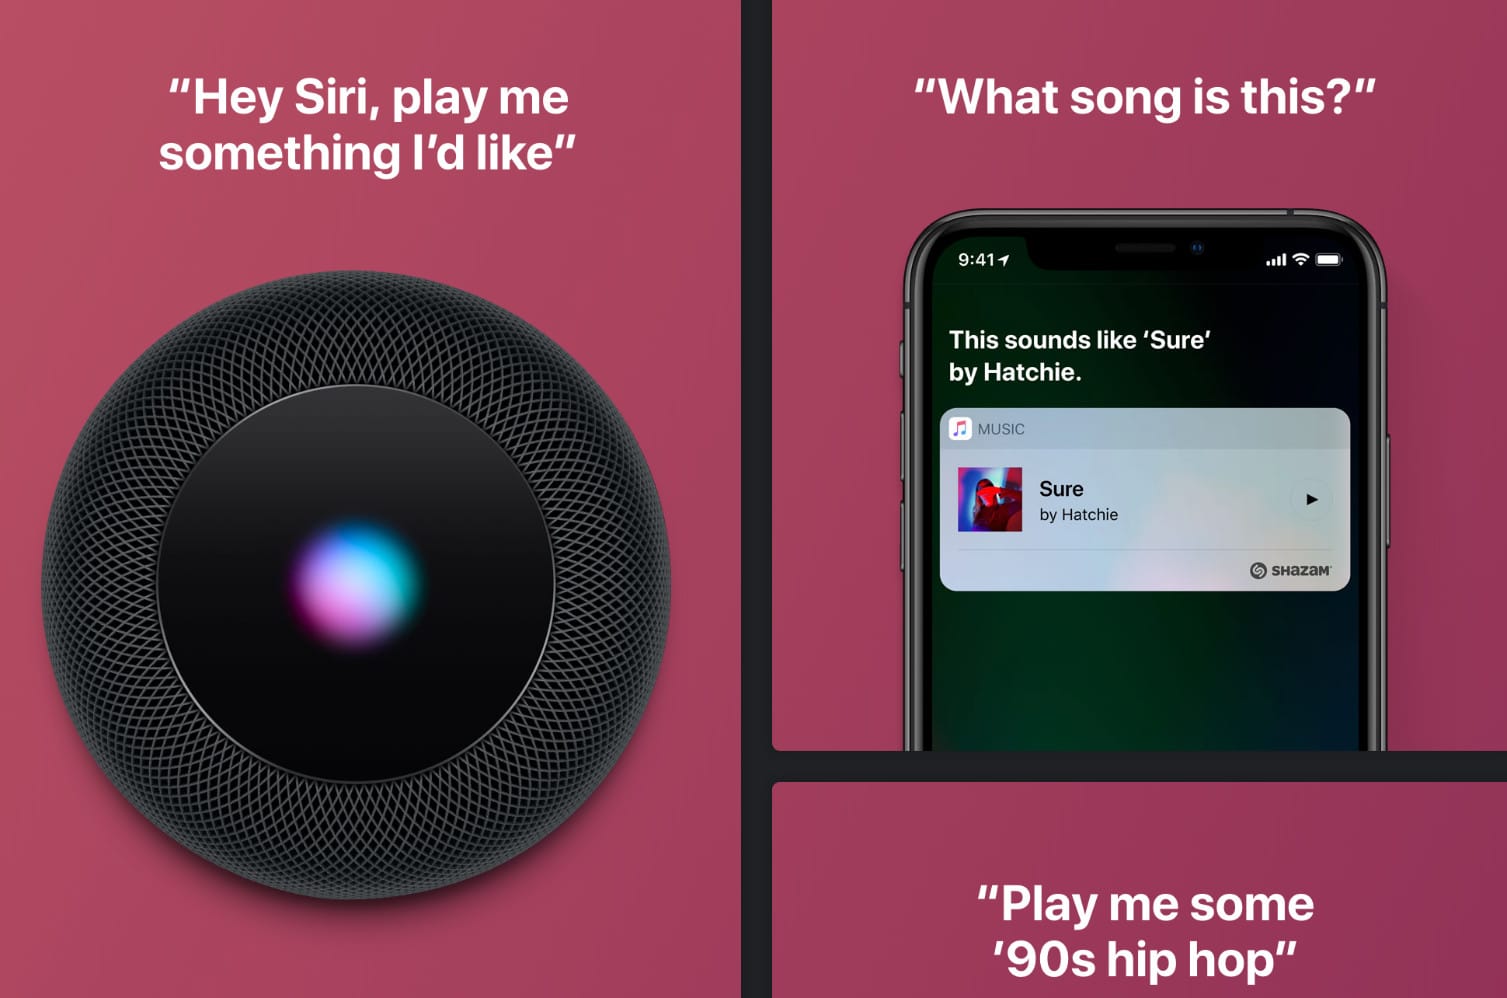 Due immagini che rappresentano la ricerca vocale: chiedere a Siri di suonare una canzone che ci piace o chiedere all’app Shazam di riconoscere una canzone